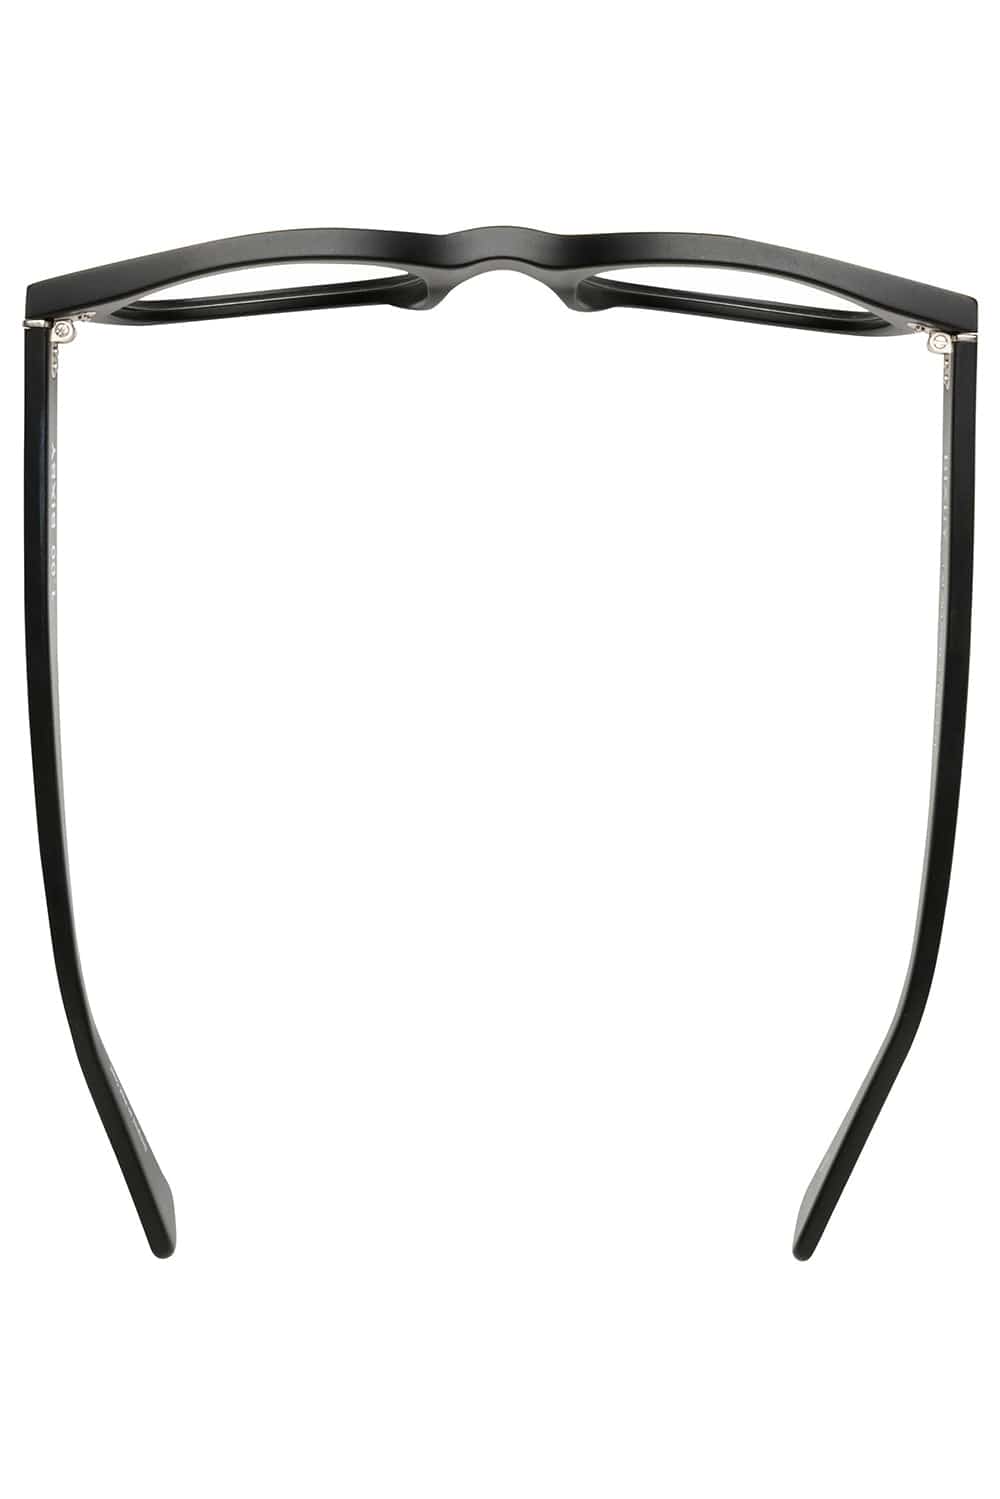 CADDIS-Bixby Progressive Glasses - Matte Black-